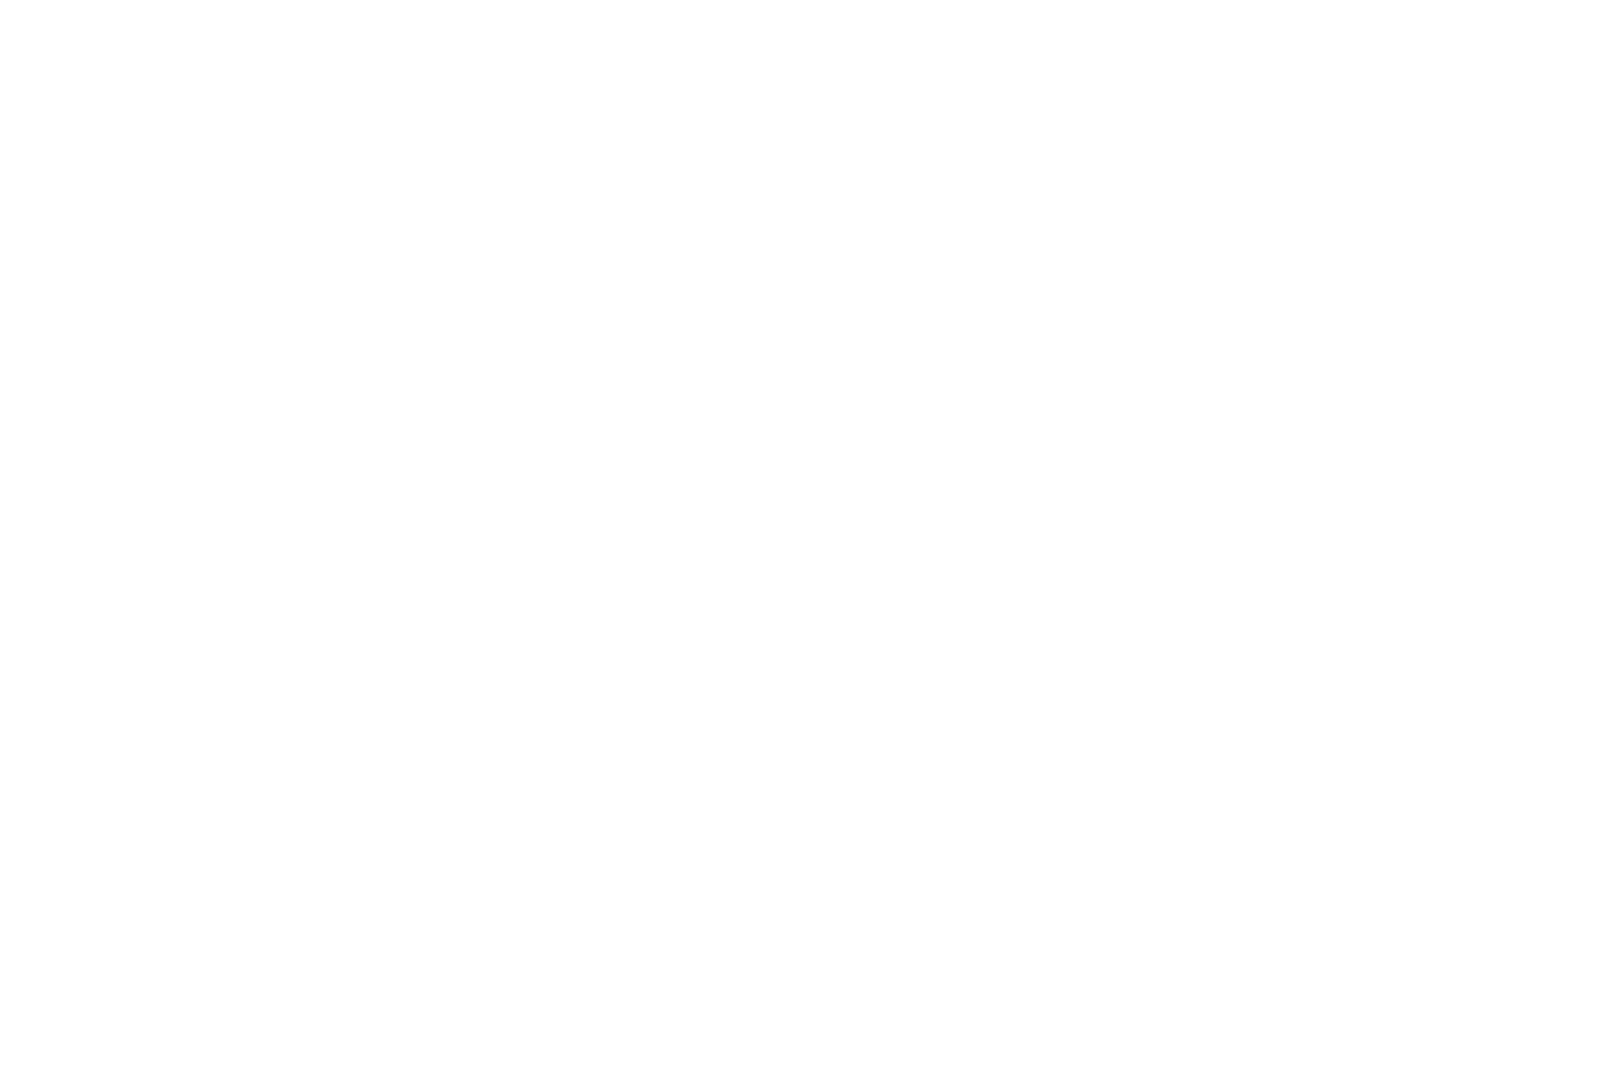 くるり×阪急京都線「沿線再発見スタンプラリー」第2弾実施決定サムネイル画像!